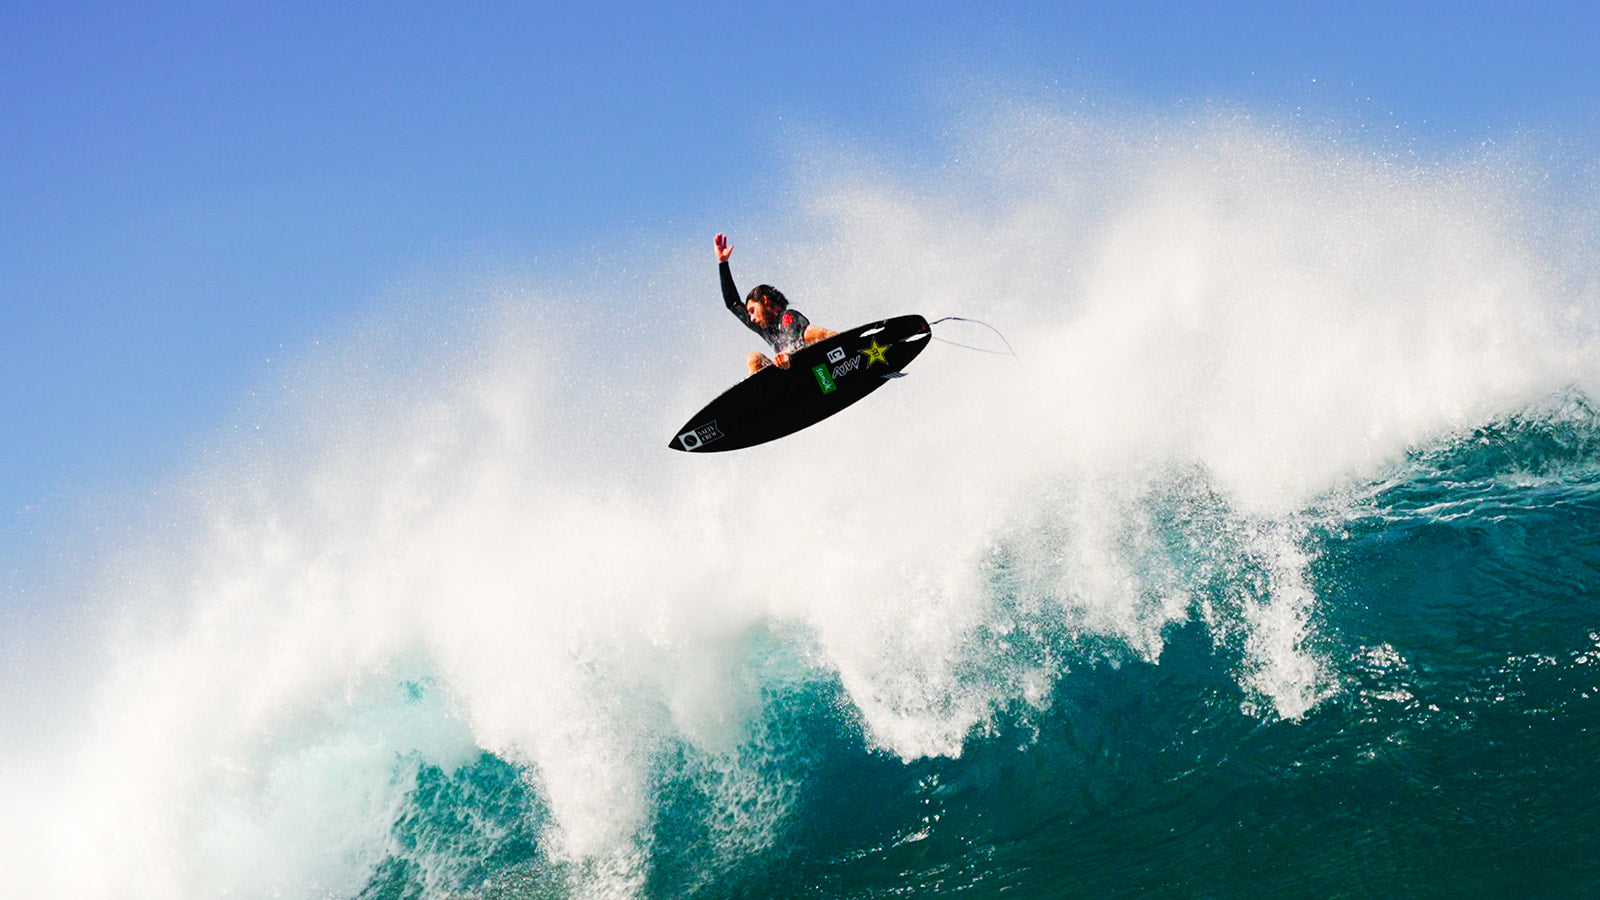 Matt Meola surfing air photo by Jon Spenser